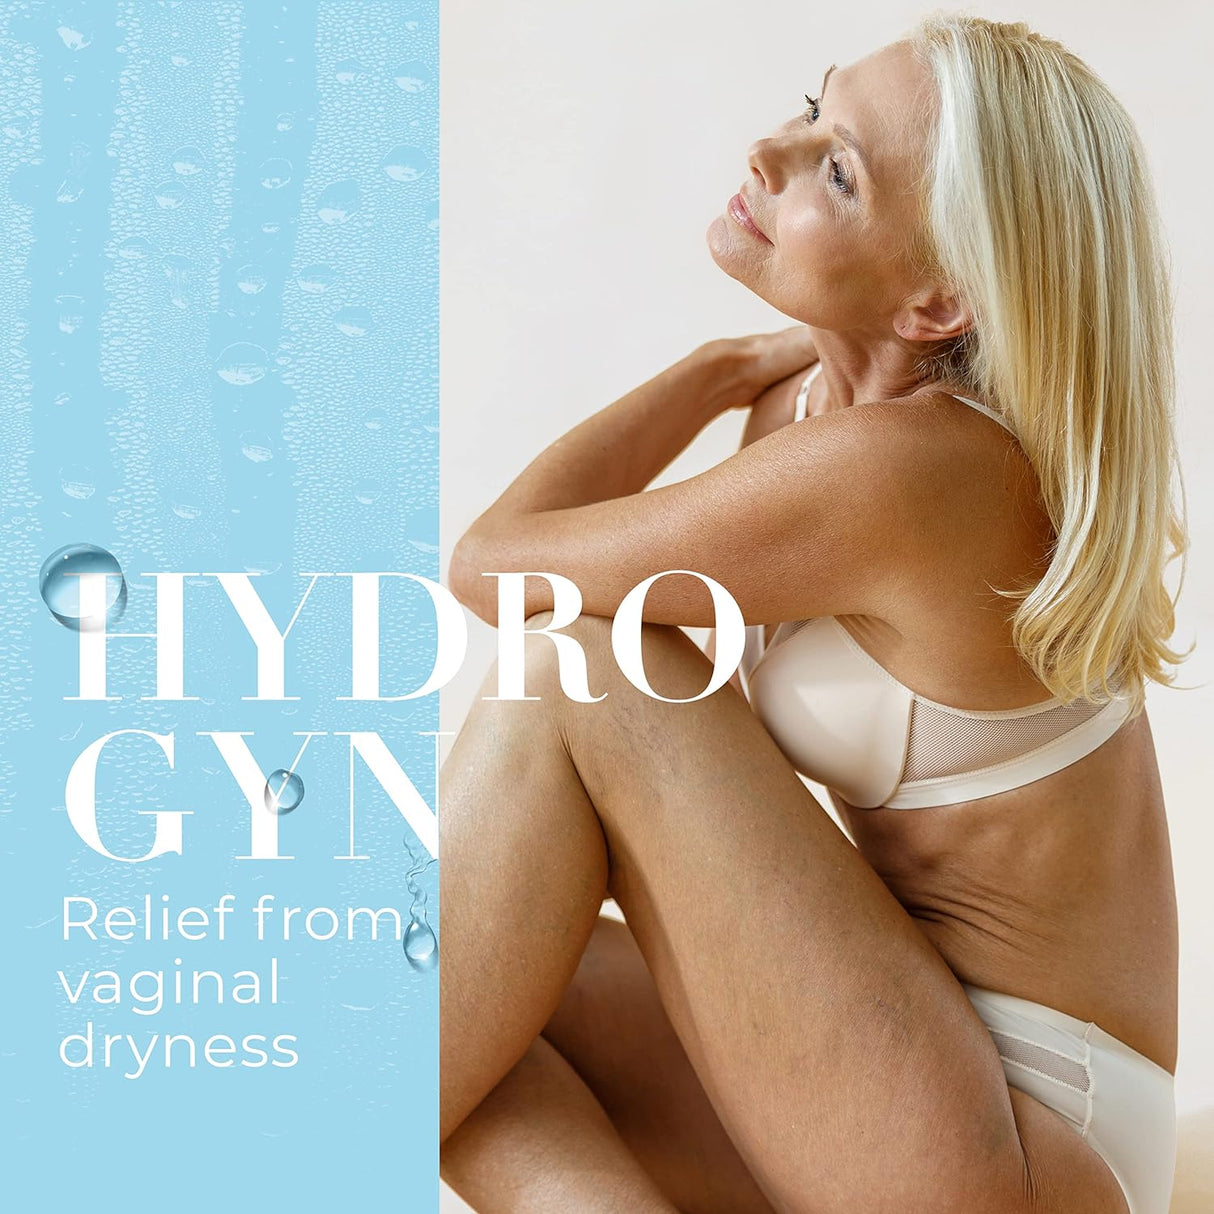 Hydro GYN Vaginal Moisturizer 10 Aplicaciones